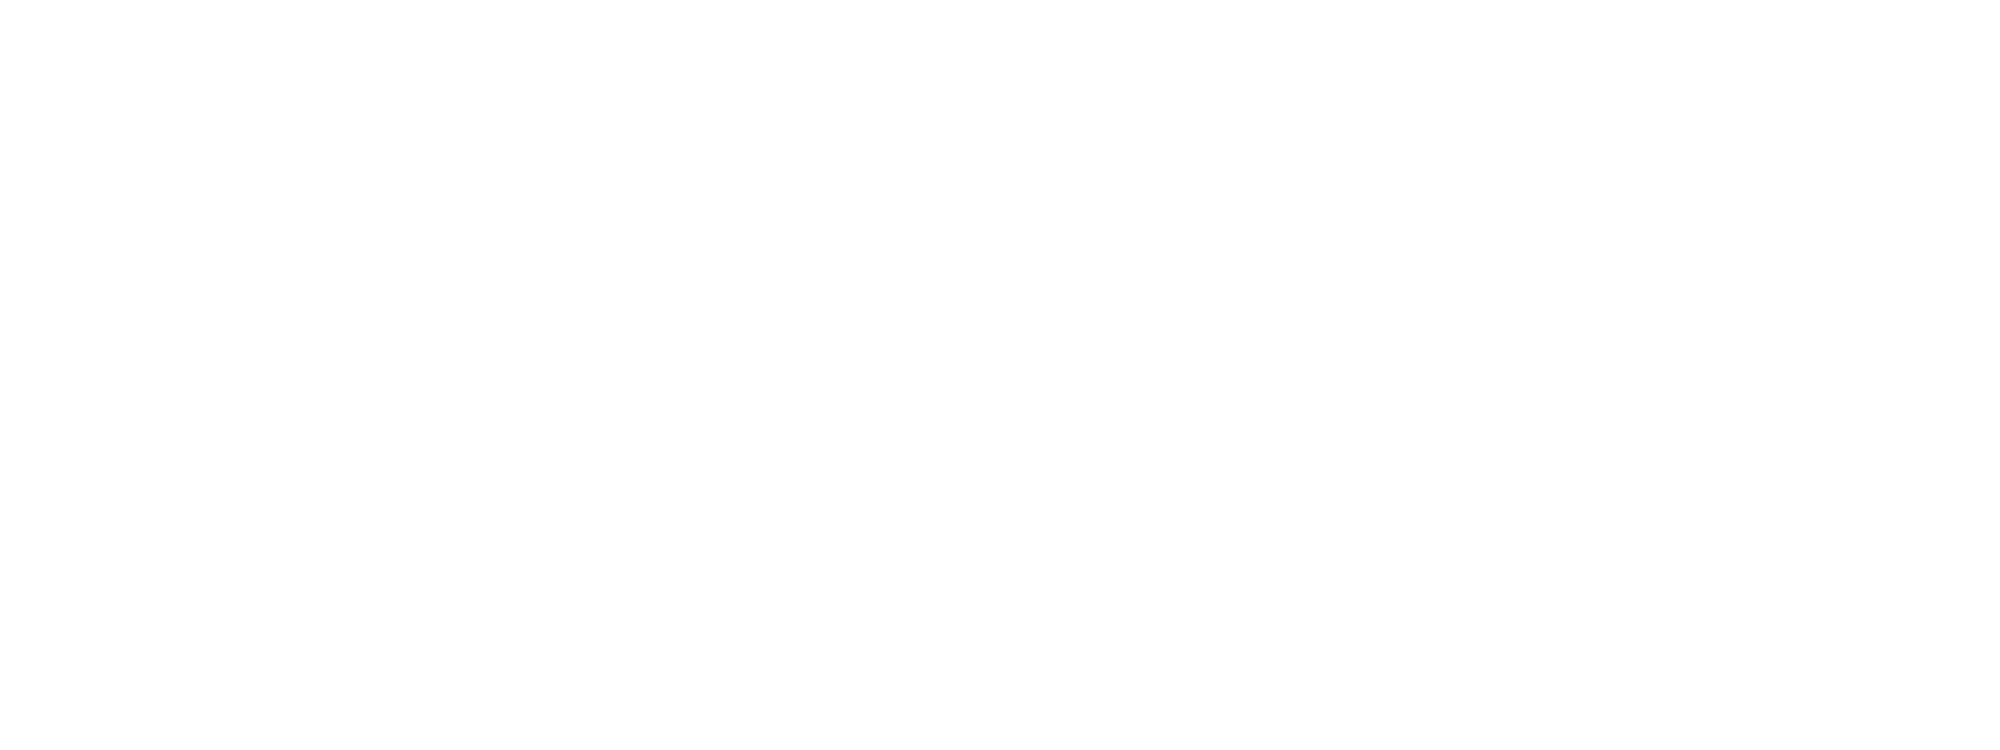 Phoenix Children_s logo_white